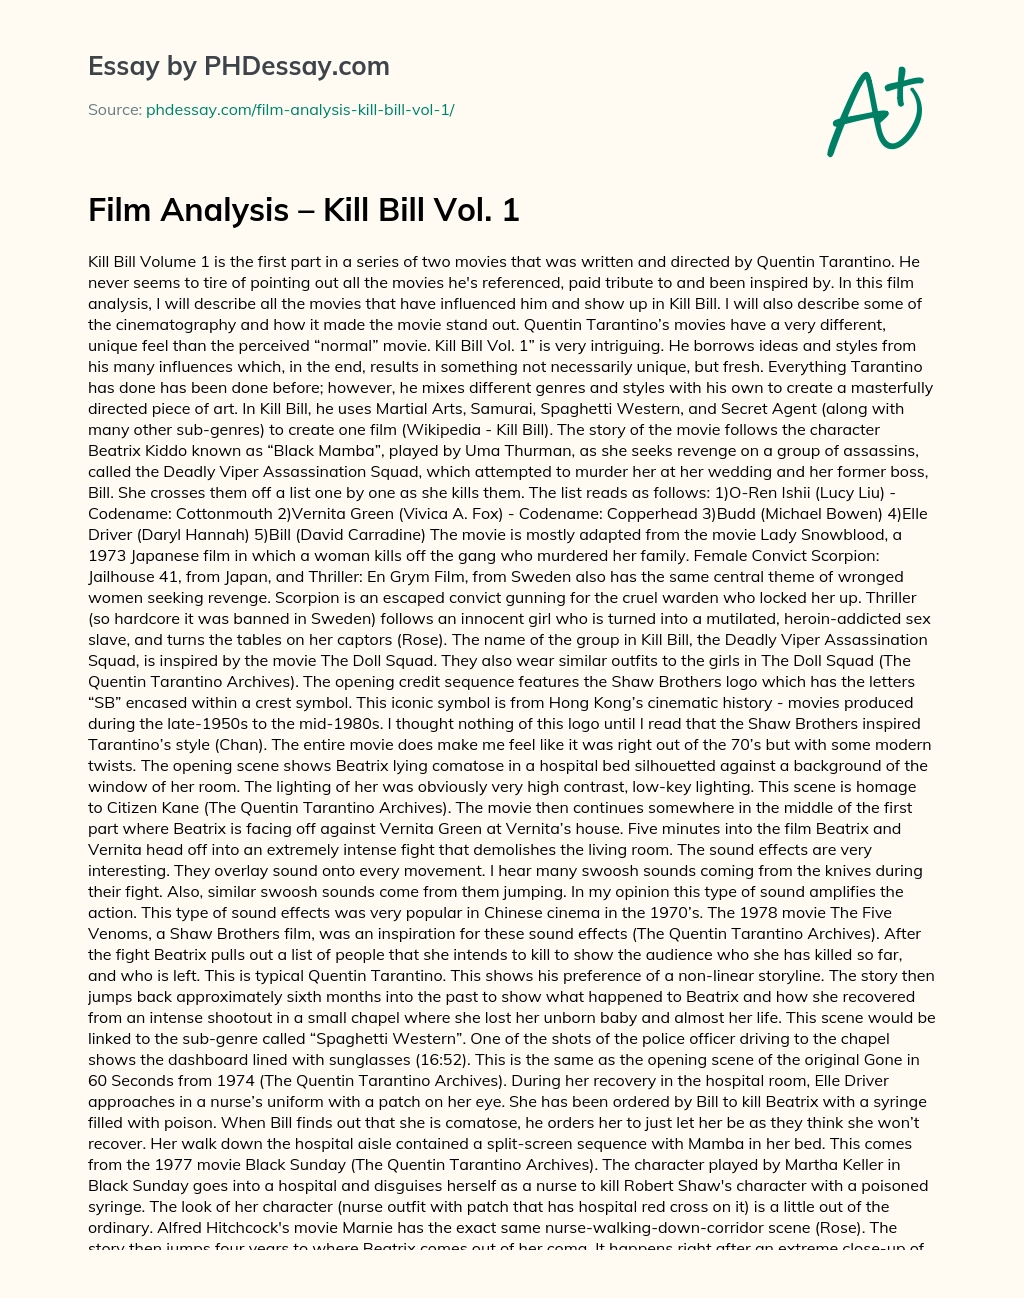 Film Analysis – Kill Bill Vol. 1 essay